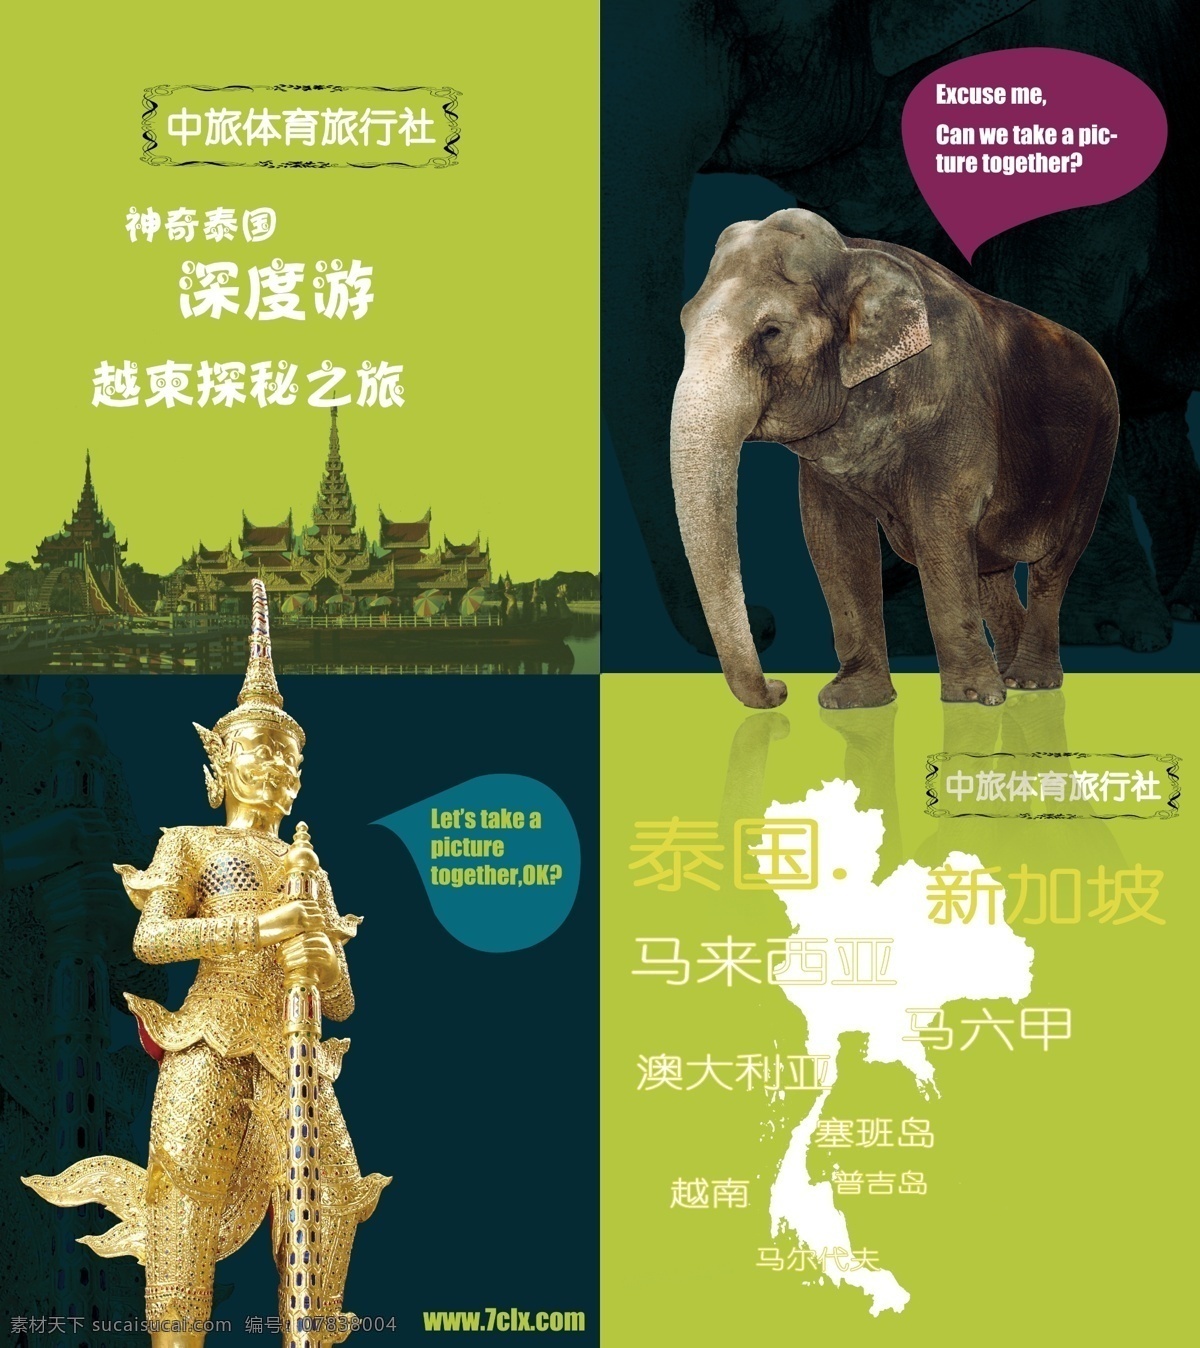 东南亚 旅游 海报 花纹 大象 纯色 泰国 马来西亚 新加坡 马六甲 马尔代夫 塞班岛 普吉岛 越南 澳大利亚 佛像 房地产广告 广告设计模板 源文件